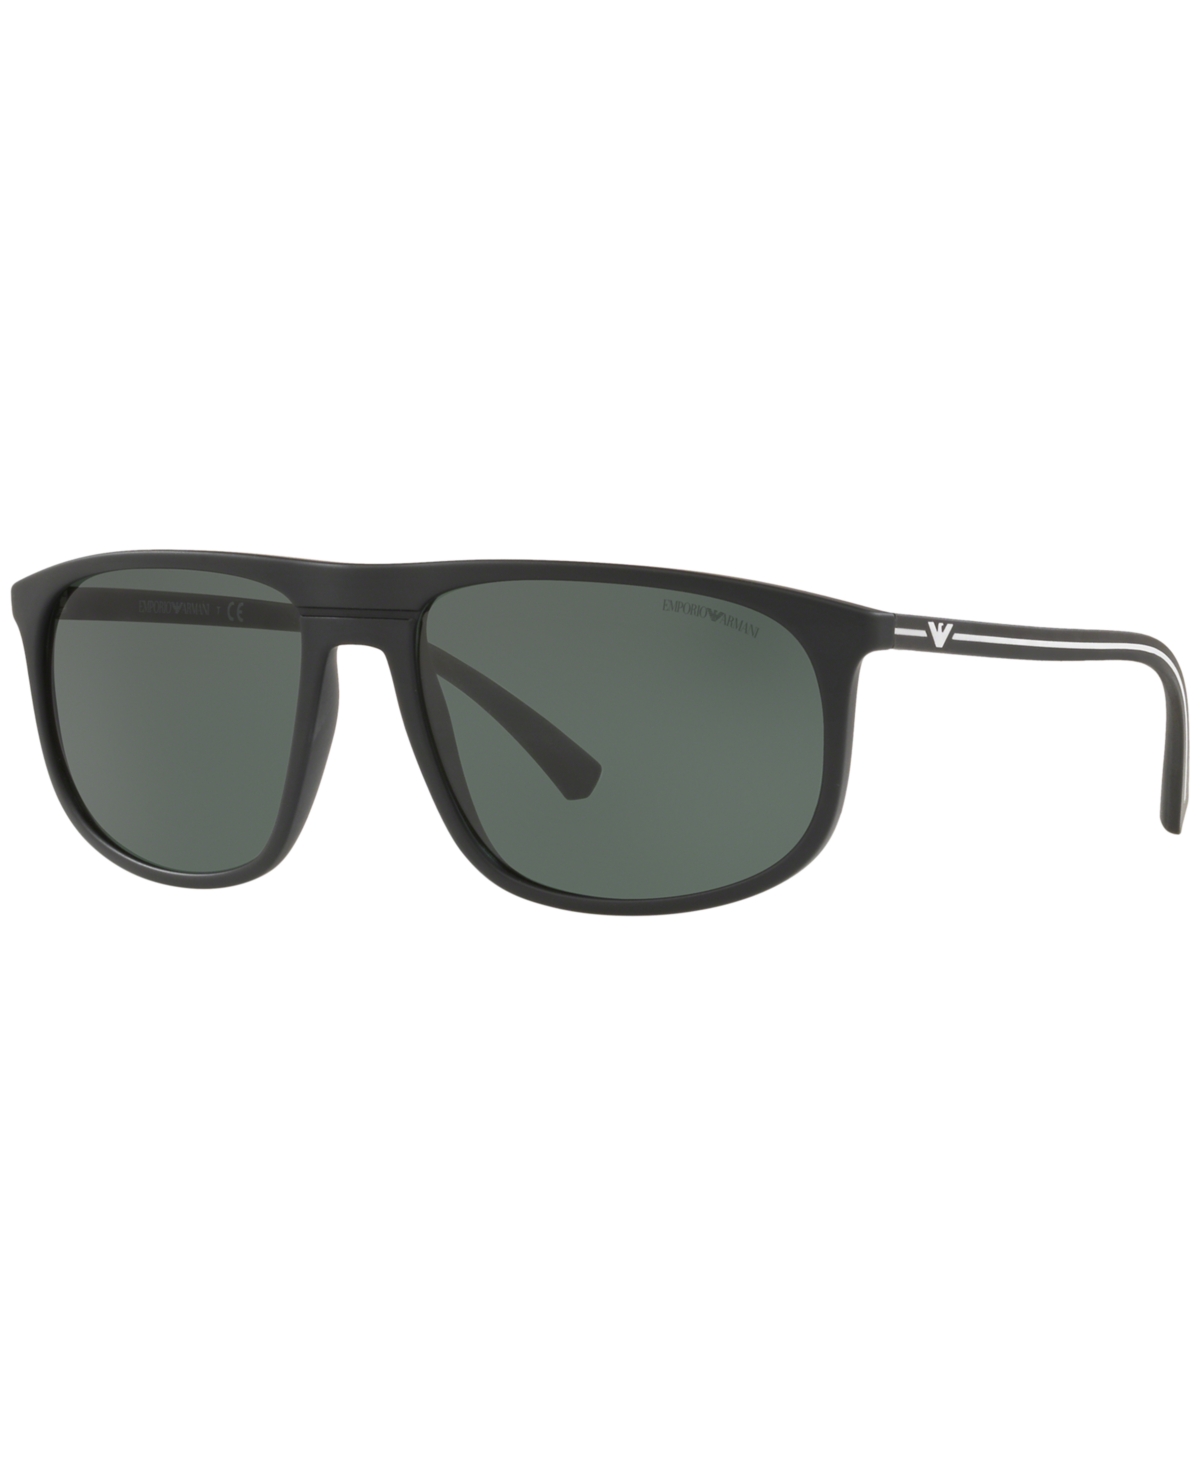 Emporio Armani Sunglasses, Ea4118 59 In Black Rubber,green